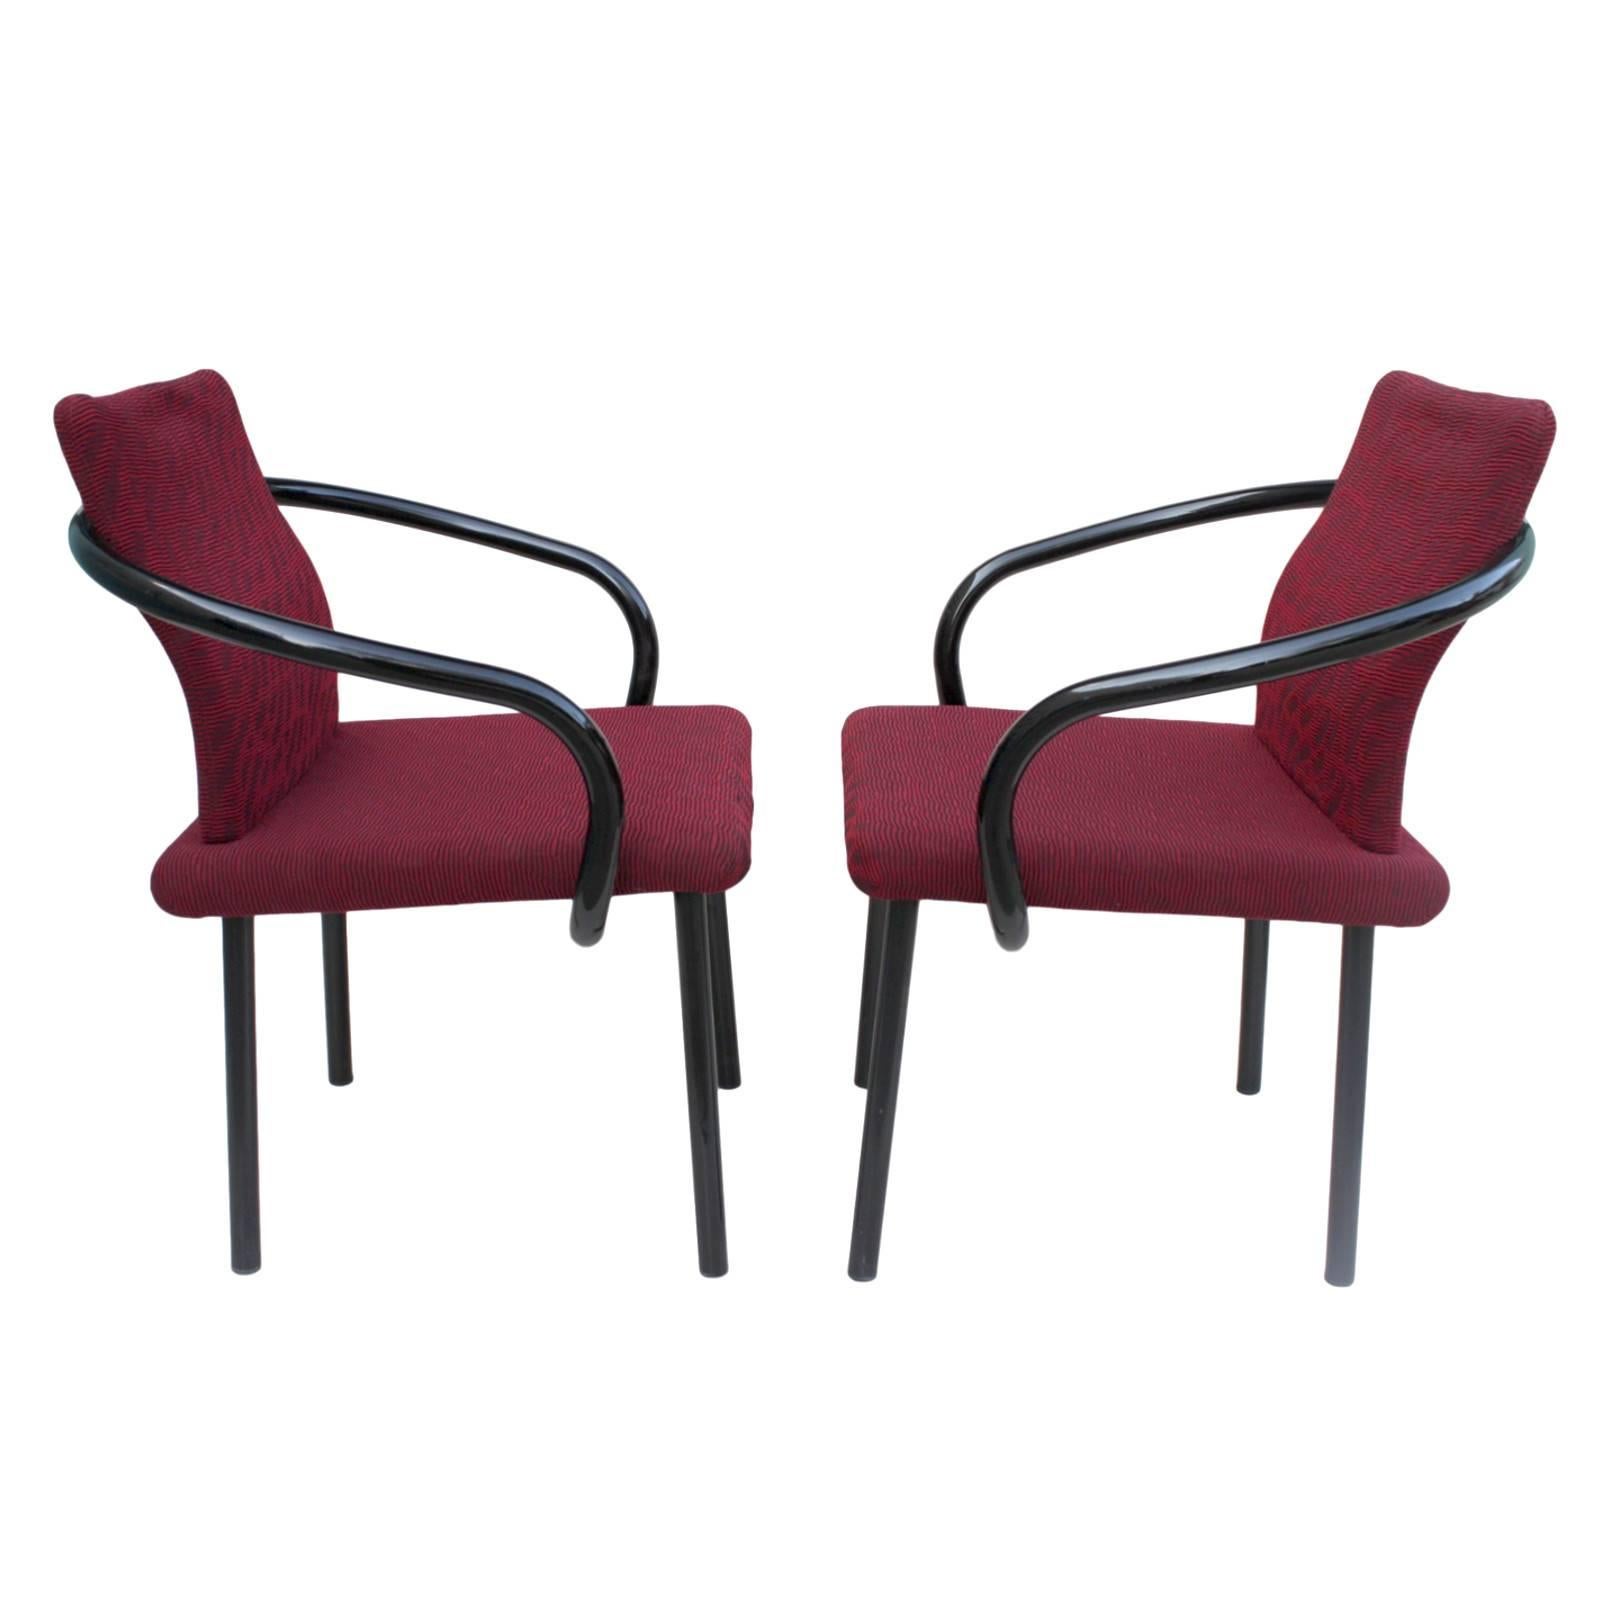 Dieses fantastische Paar Manadarin Beistellstühle wurde von Ettore Sottsass für Knoll entworfen. Die Stühle verfügen über geschwungene Stahlrohrarme in glänzendem Schwarz, mattschwarze Beine aus geraden Rohren und eine fantastische burgunderfarbene